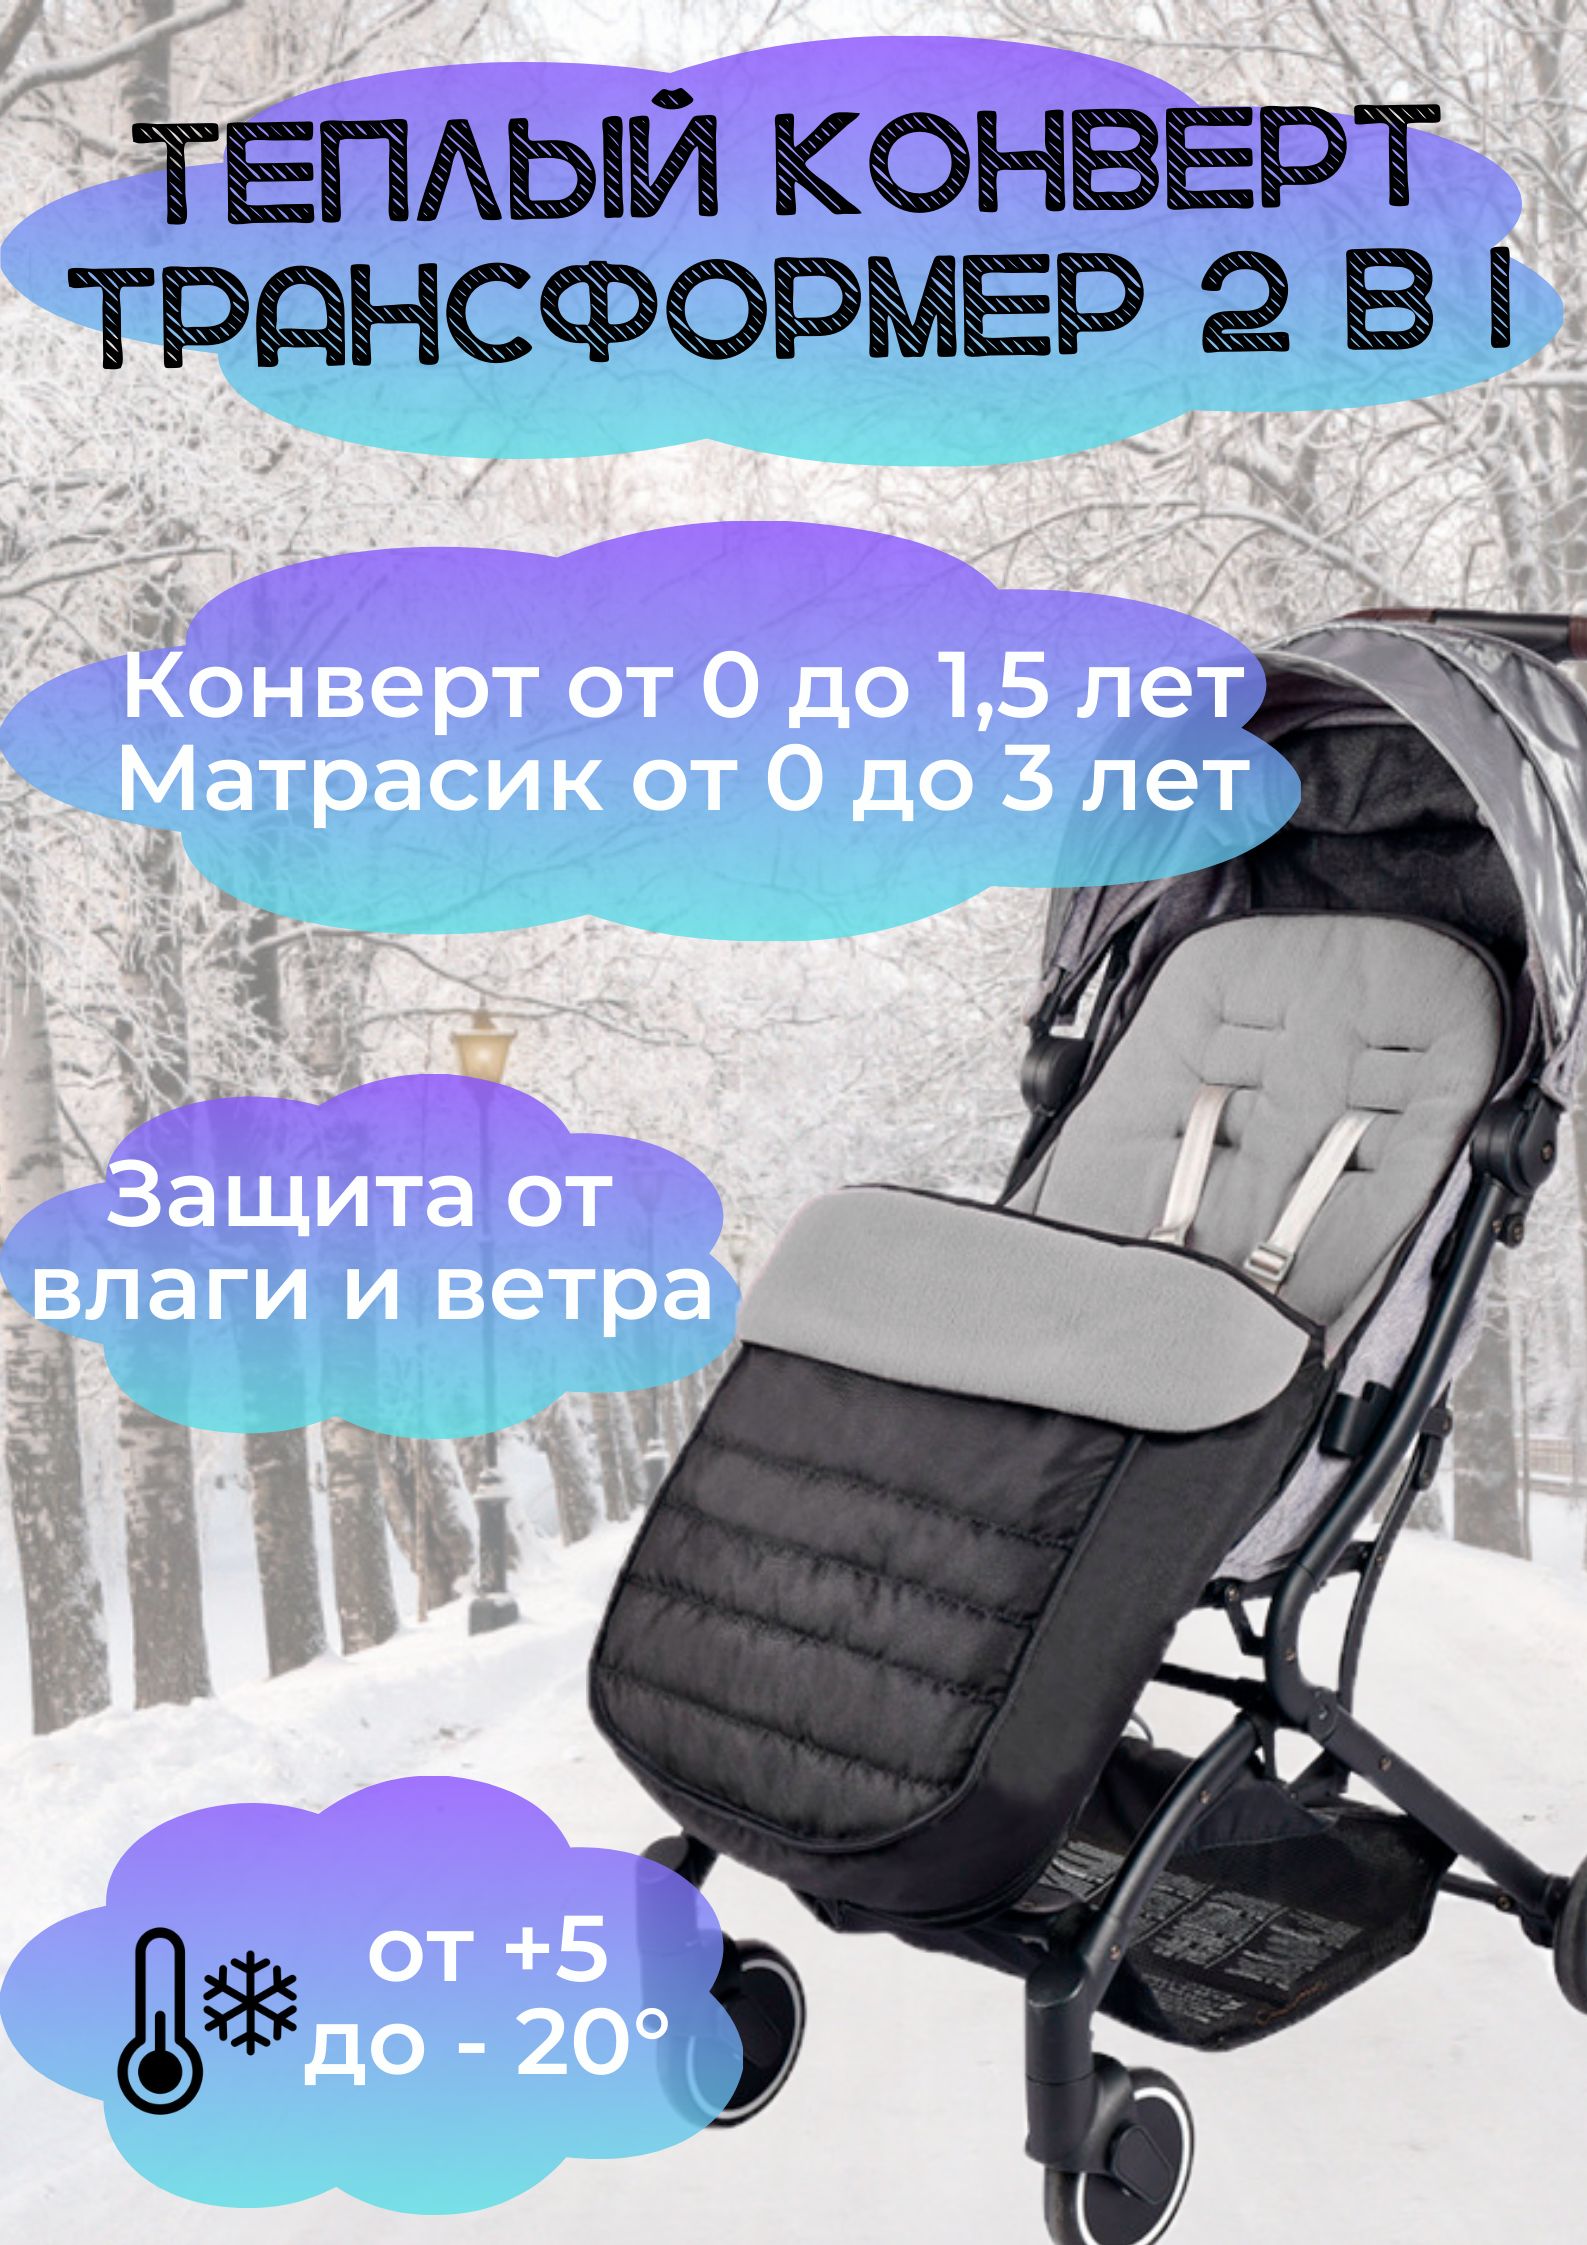 Продам: конверт зимний Kids Comfort в Екатеринбурге